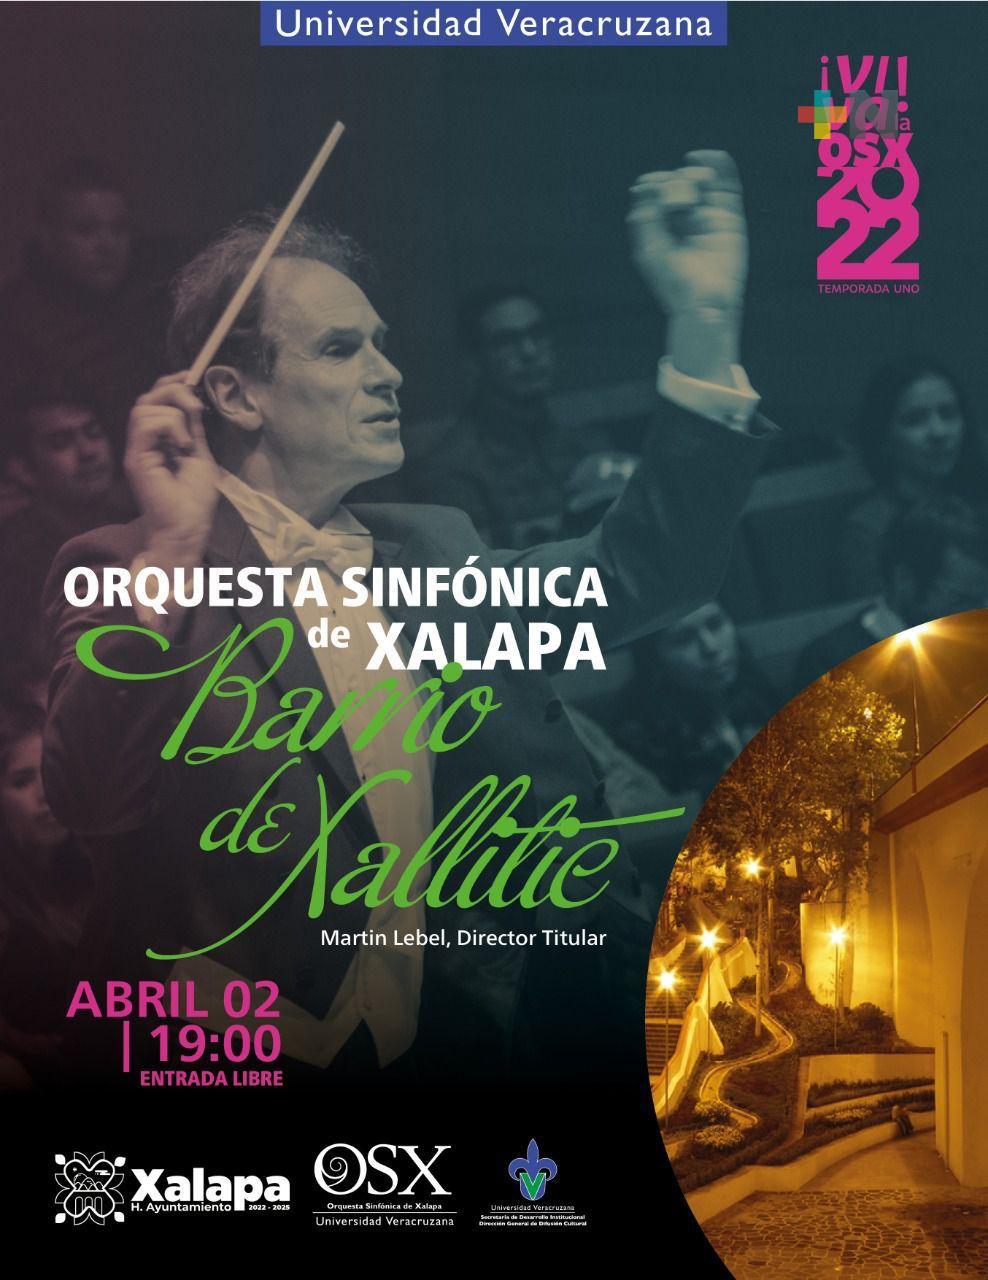 La Orquesta Sinfónica de Xalapa hará sonar el barrio Xallitic